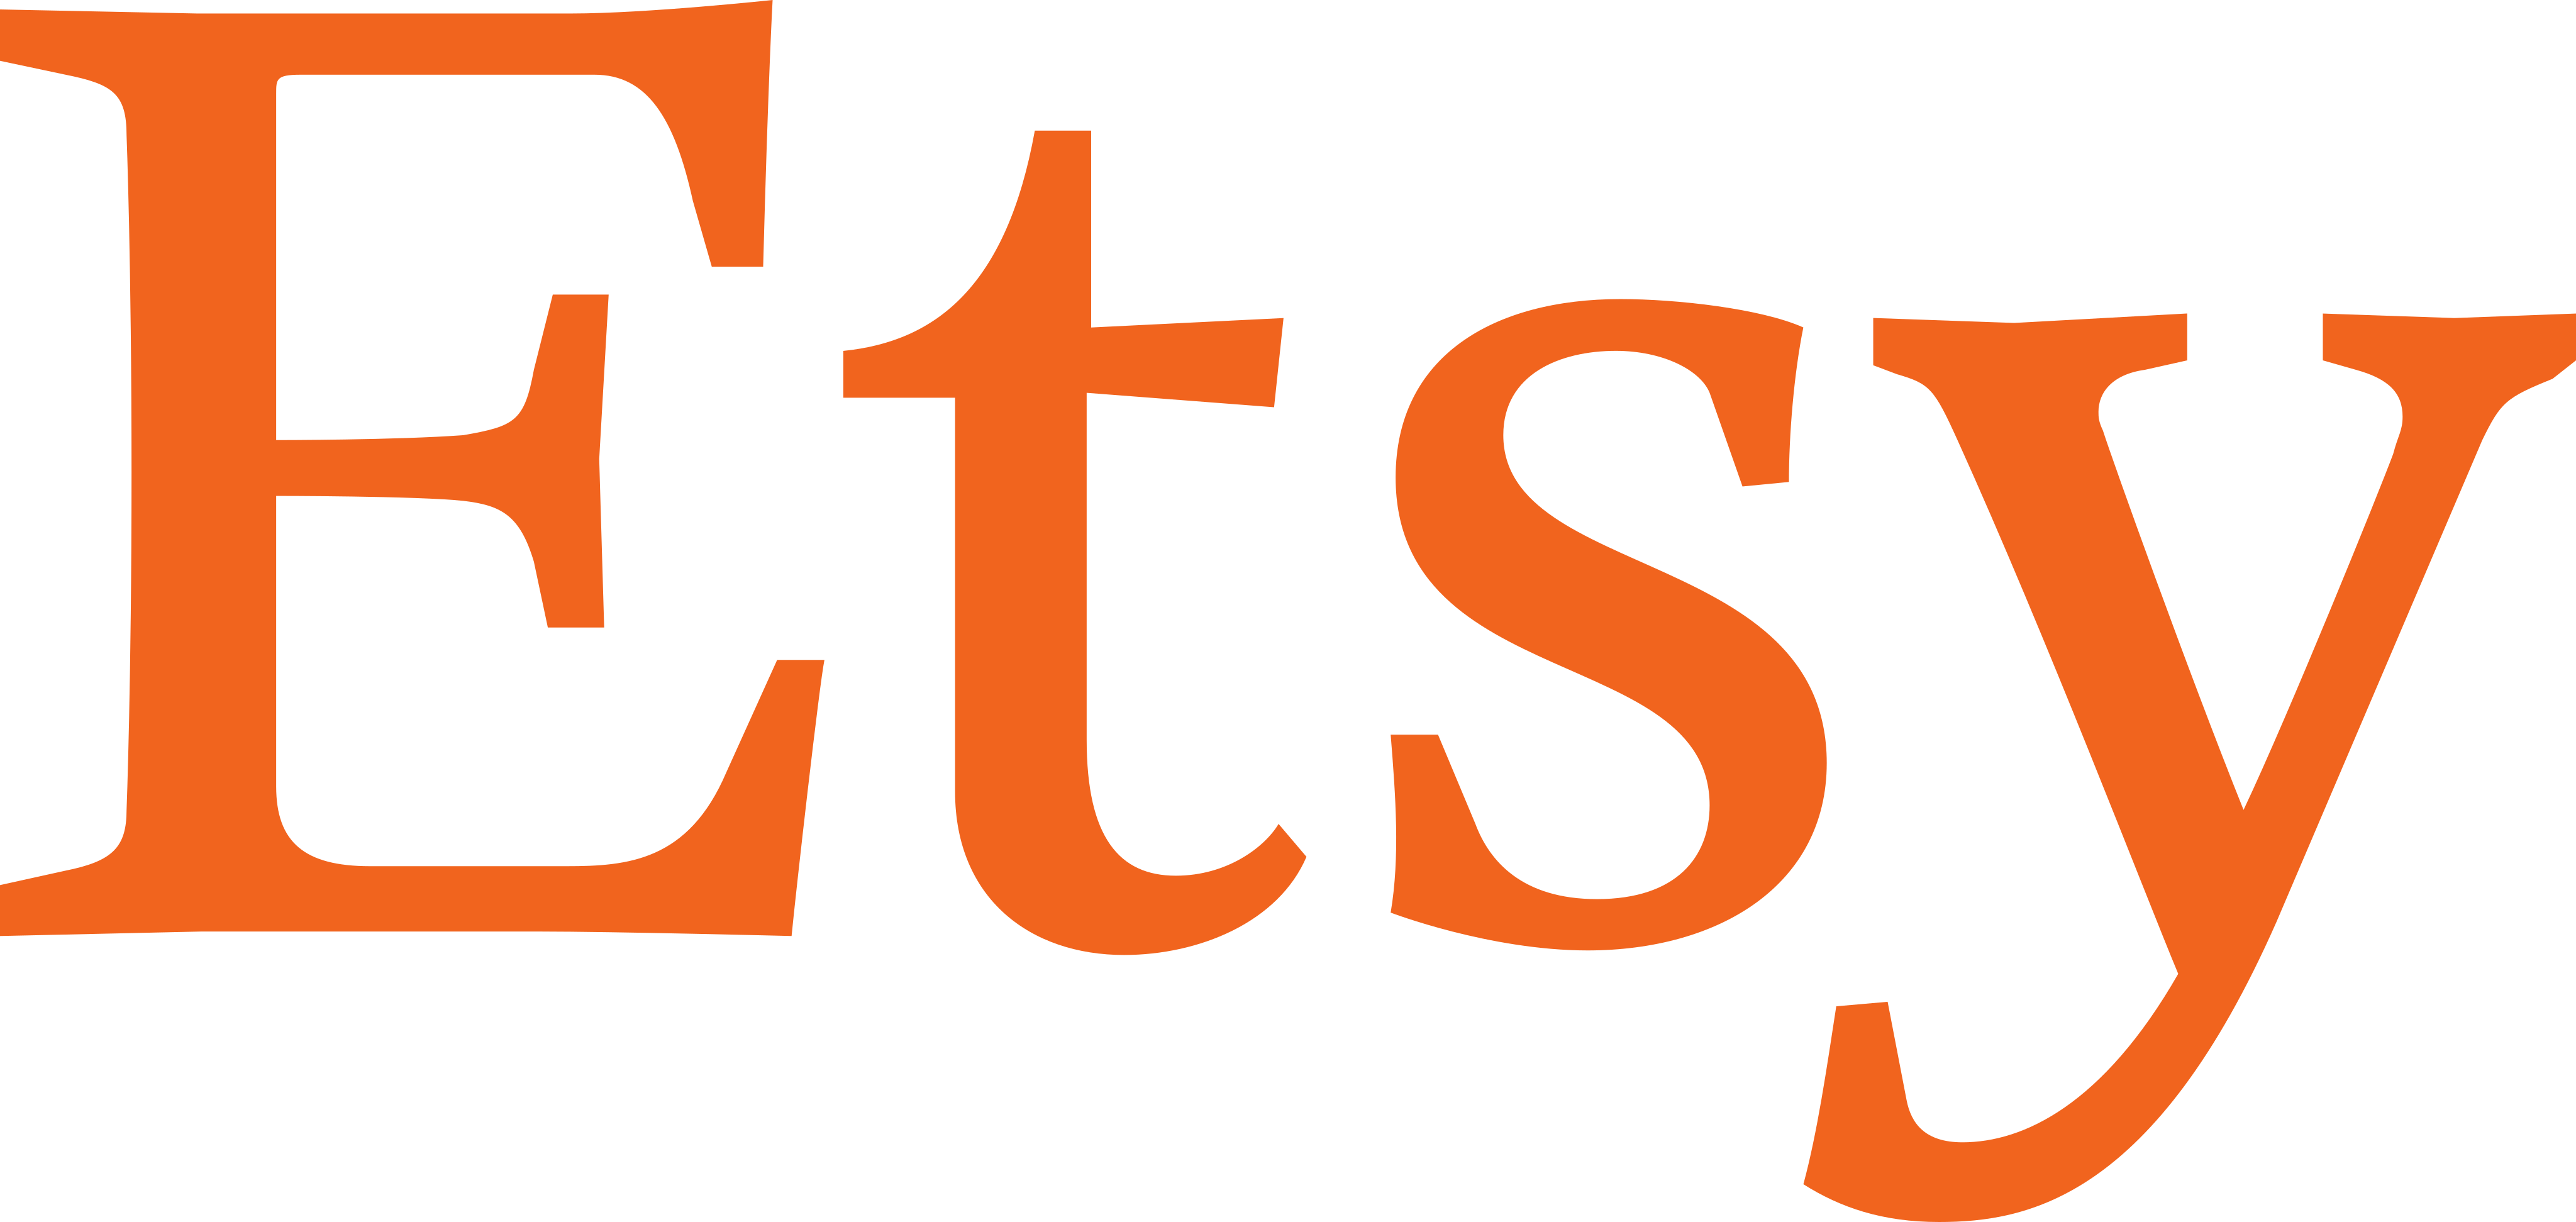 etsy logo 14 - Etsy Logo